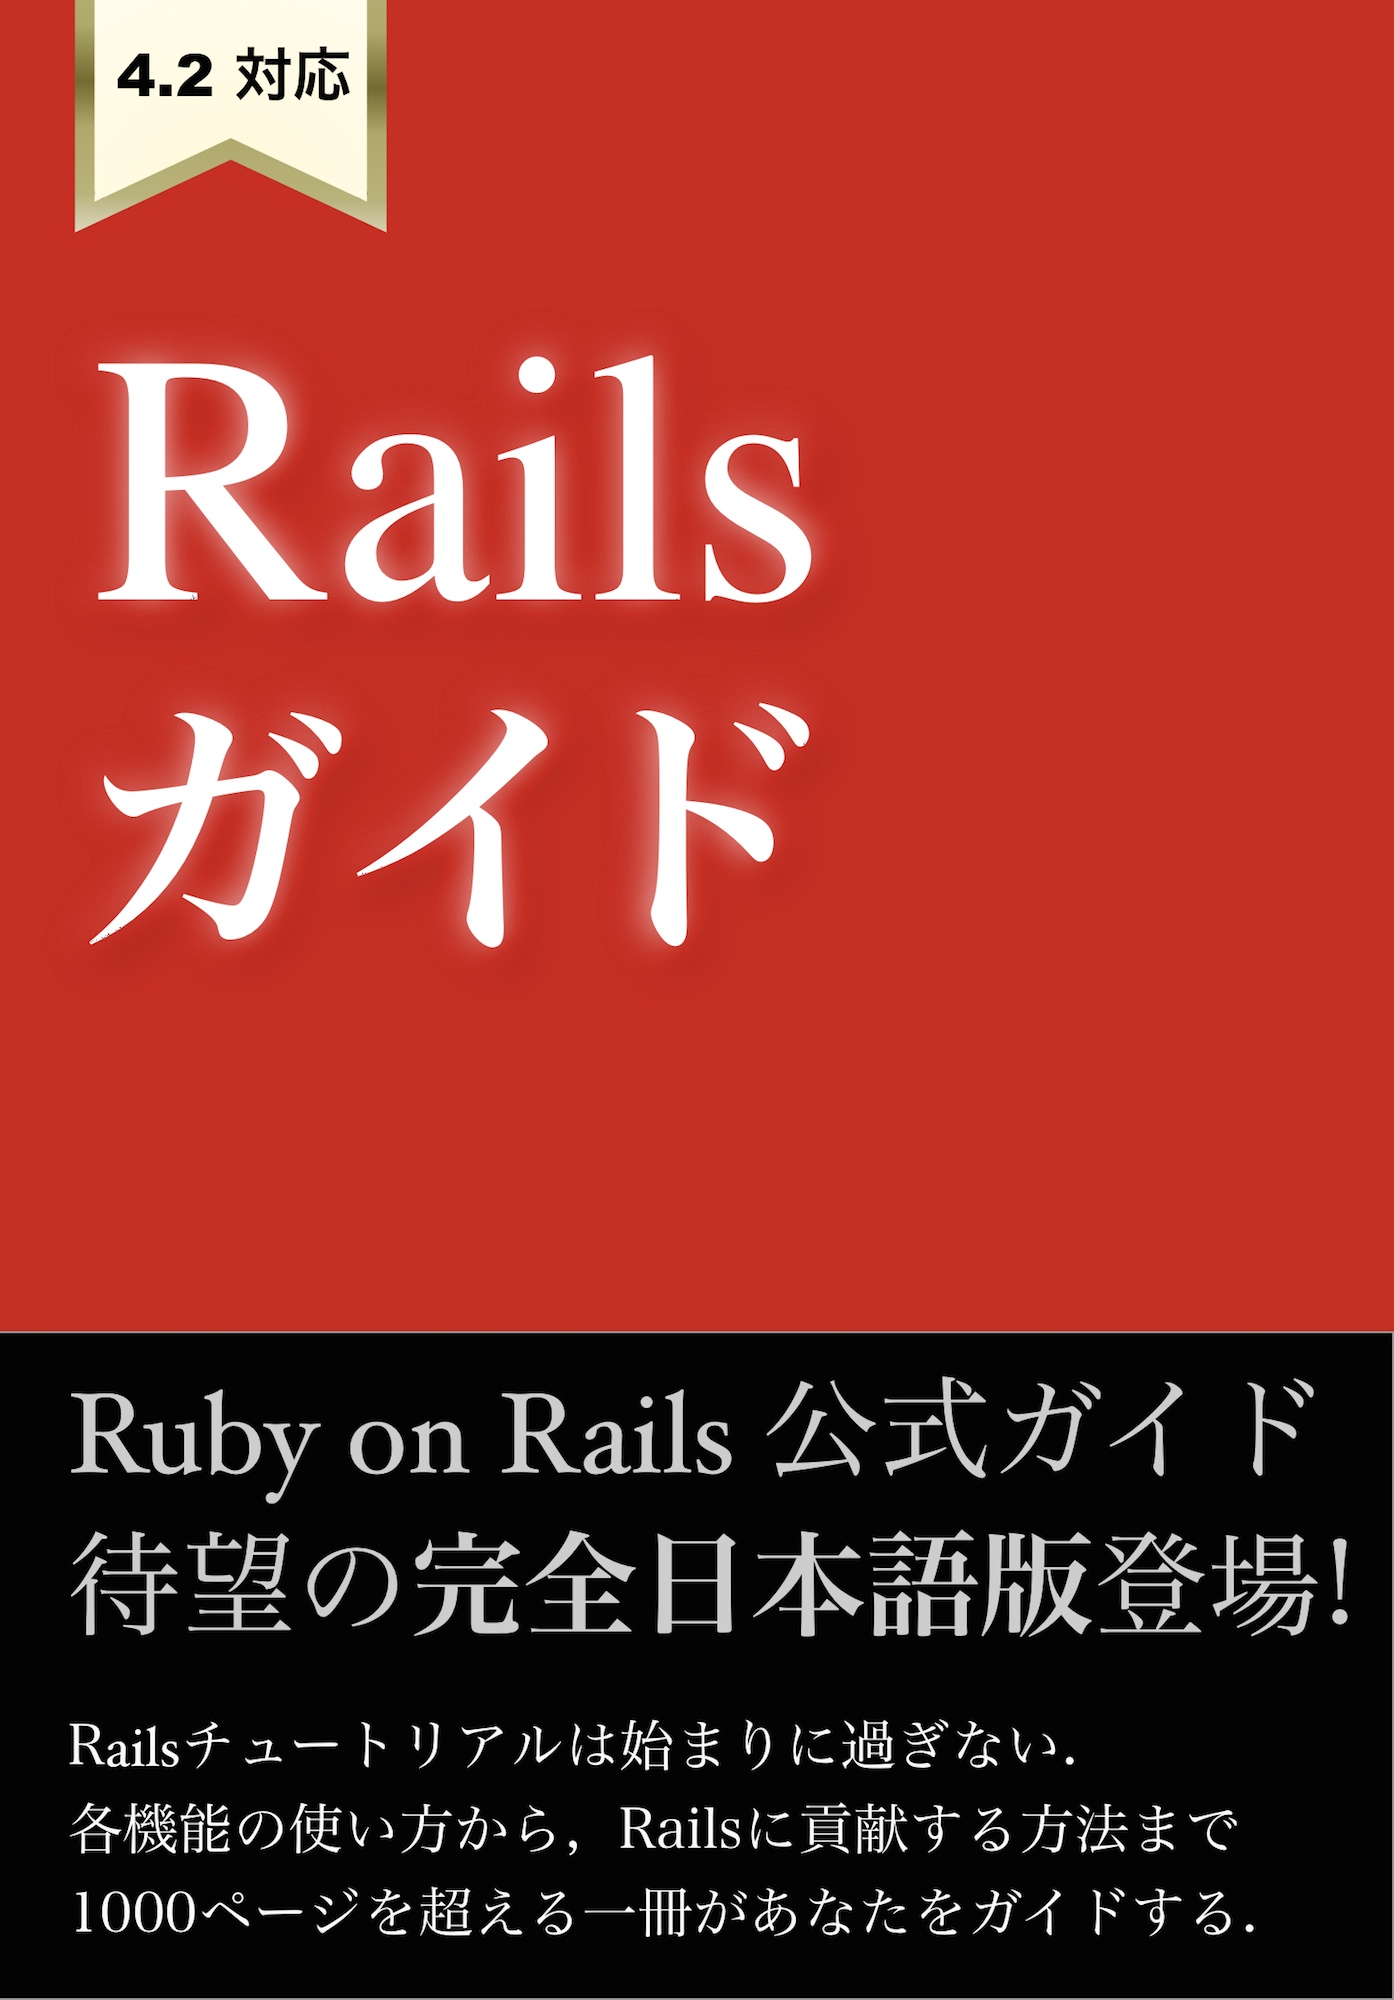 Railsガイド 達人出版会